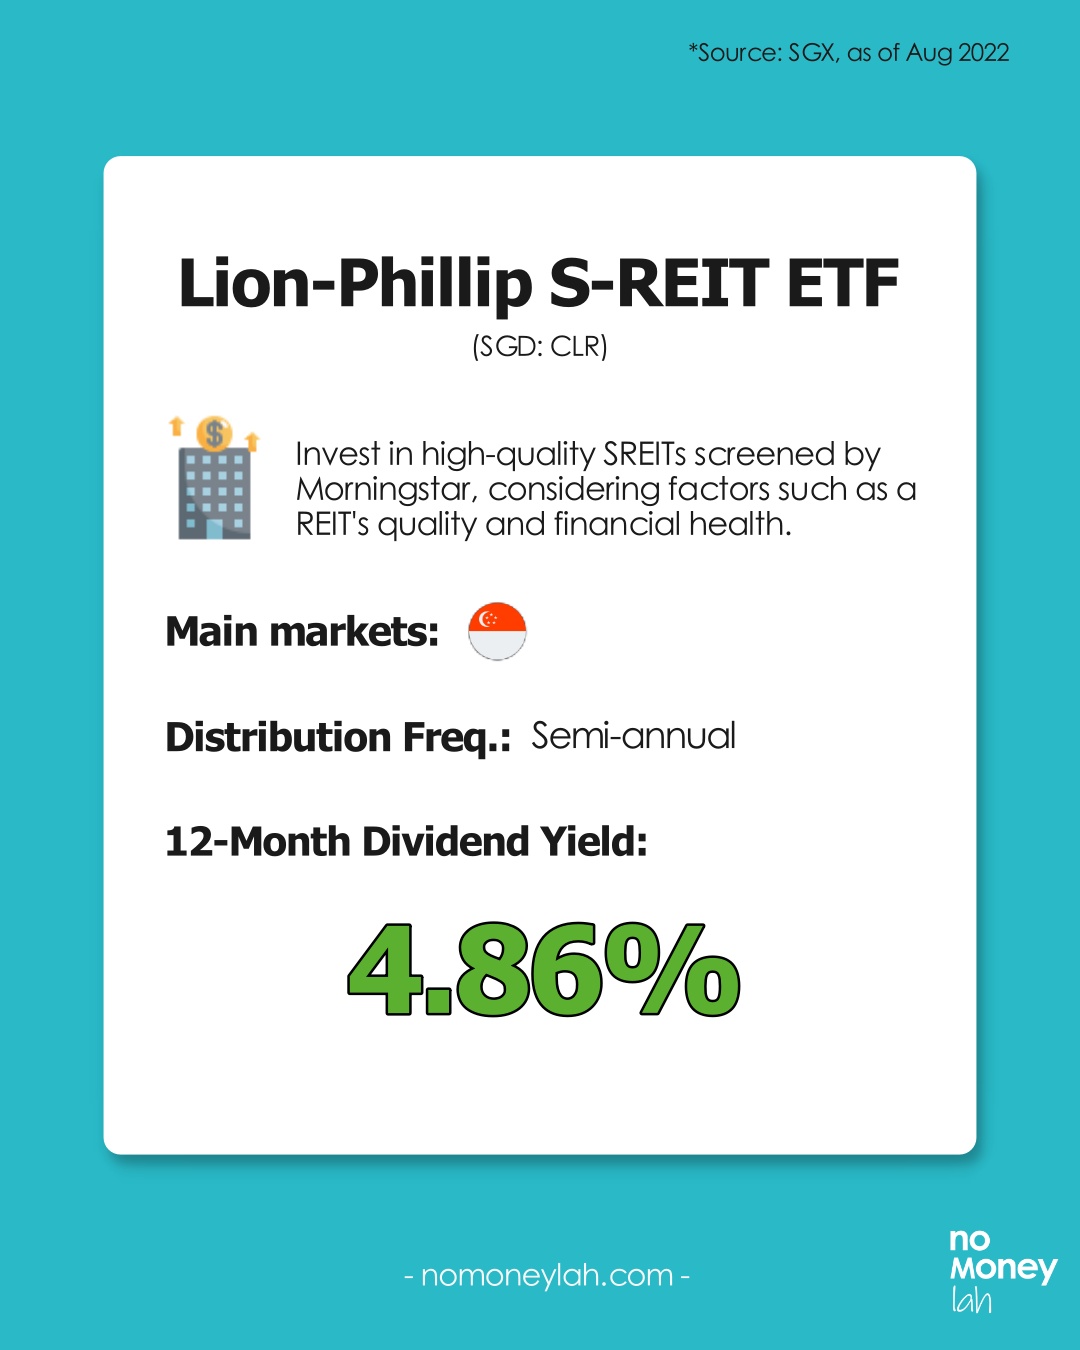 Lion-Phillip S-REIT ETF Overview (Source: SGX)